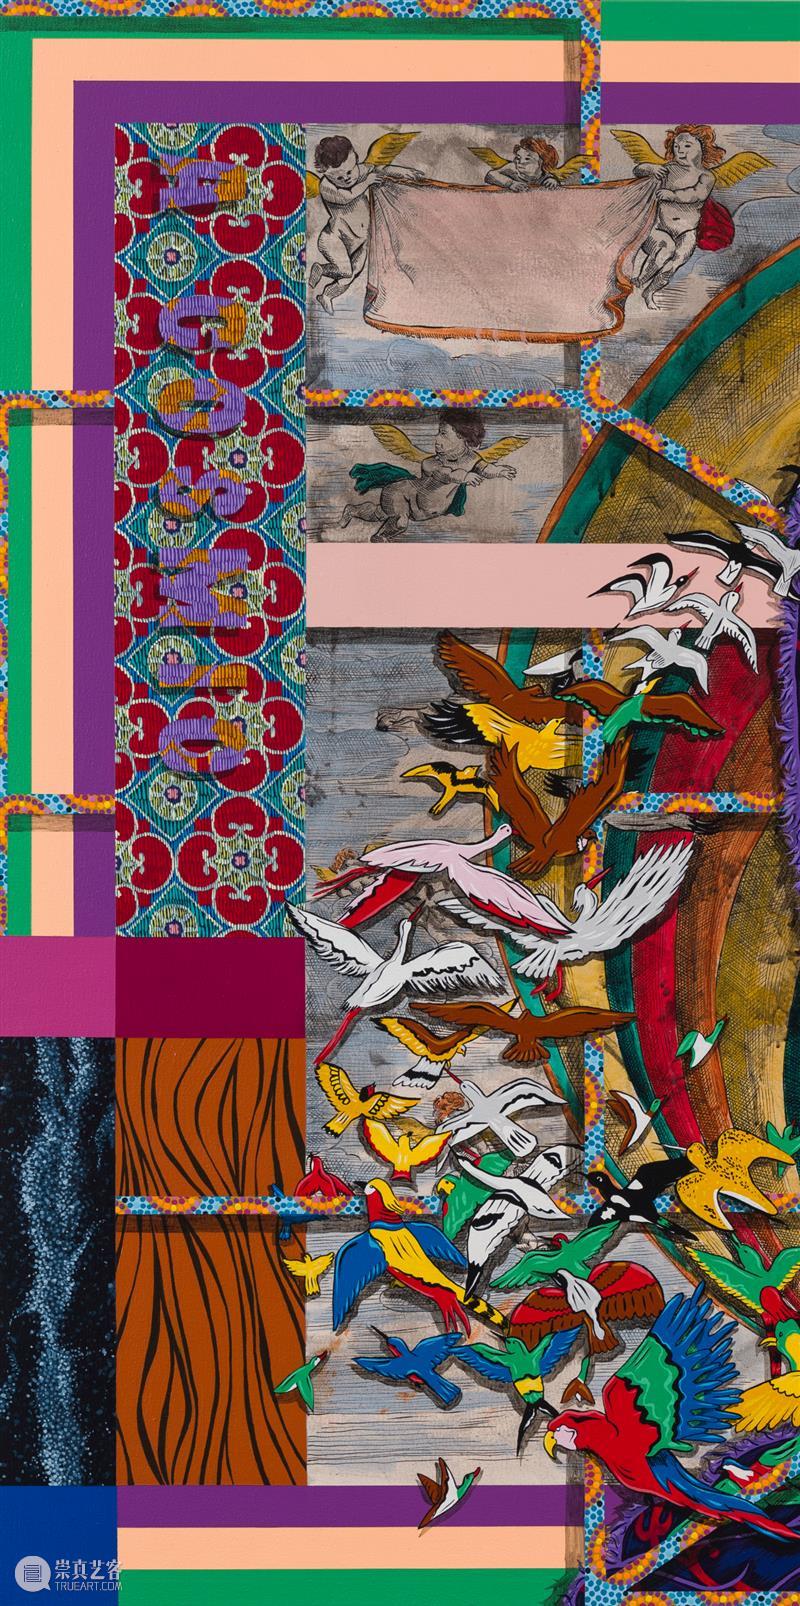 艾米尔·H·法拉赫个展“未知之谜” 9 月 8 日正式开幕 崇真艺客